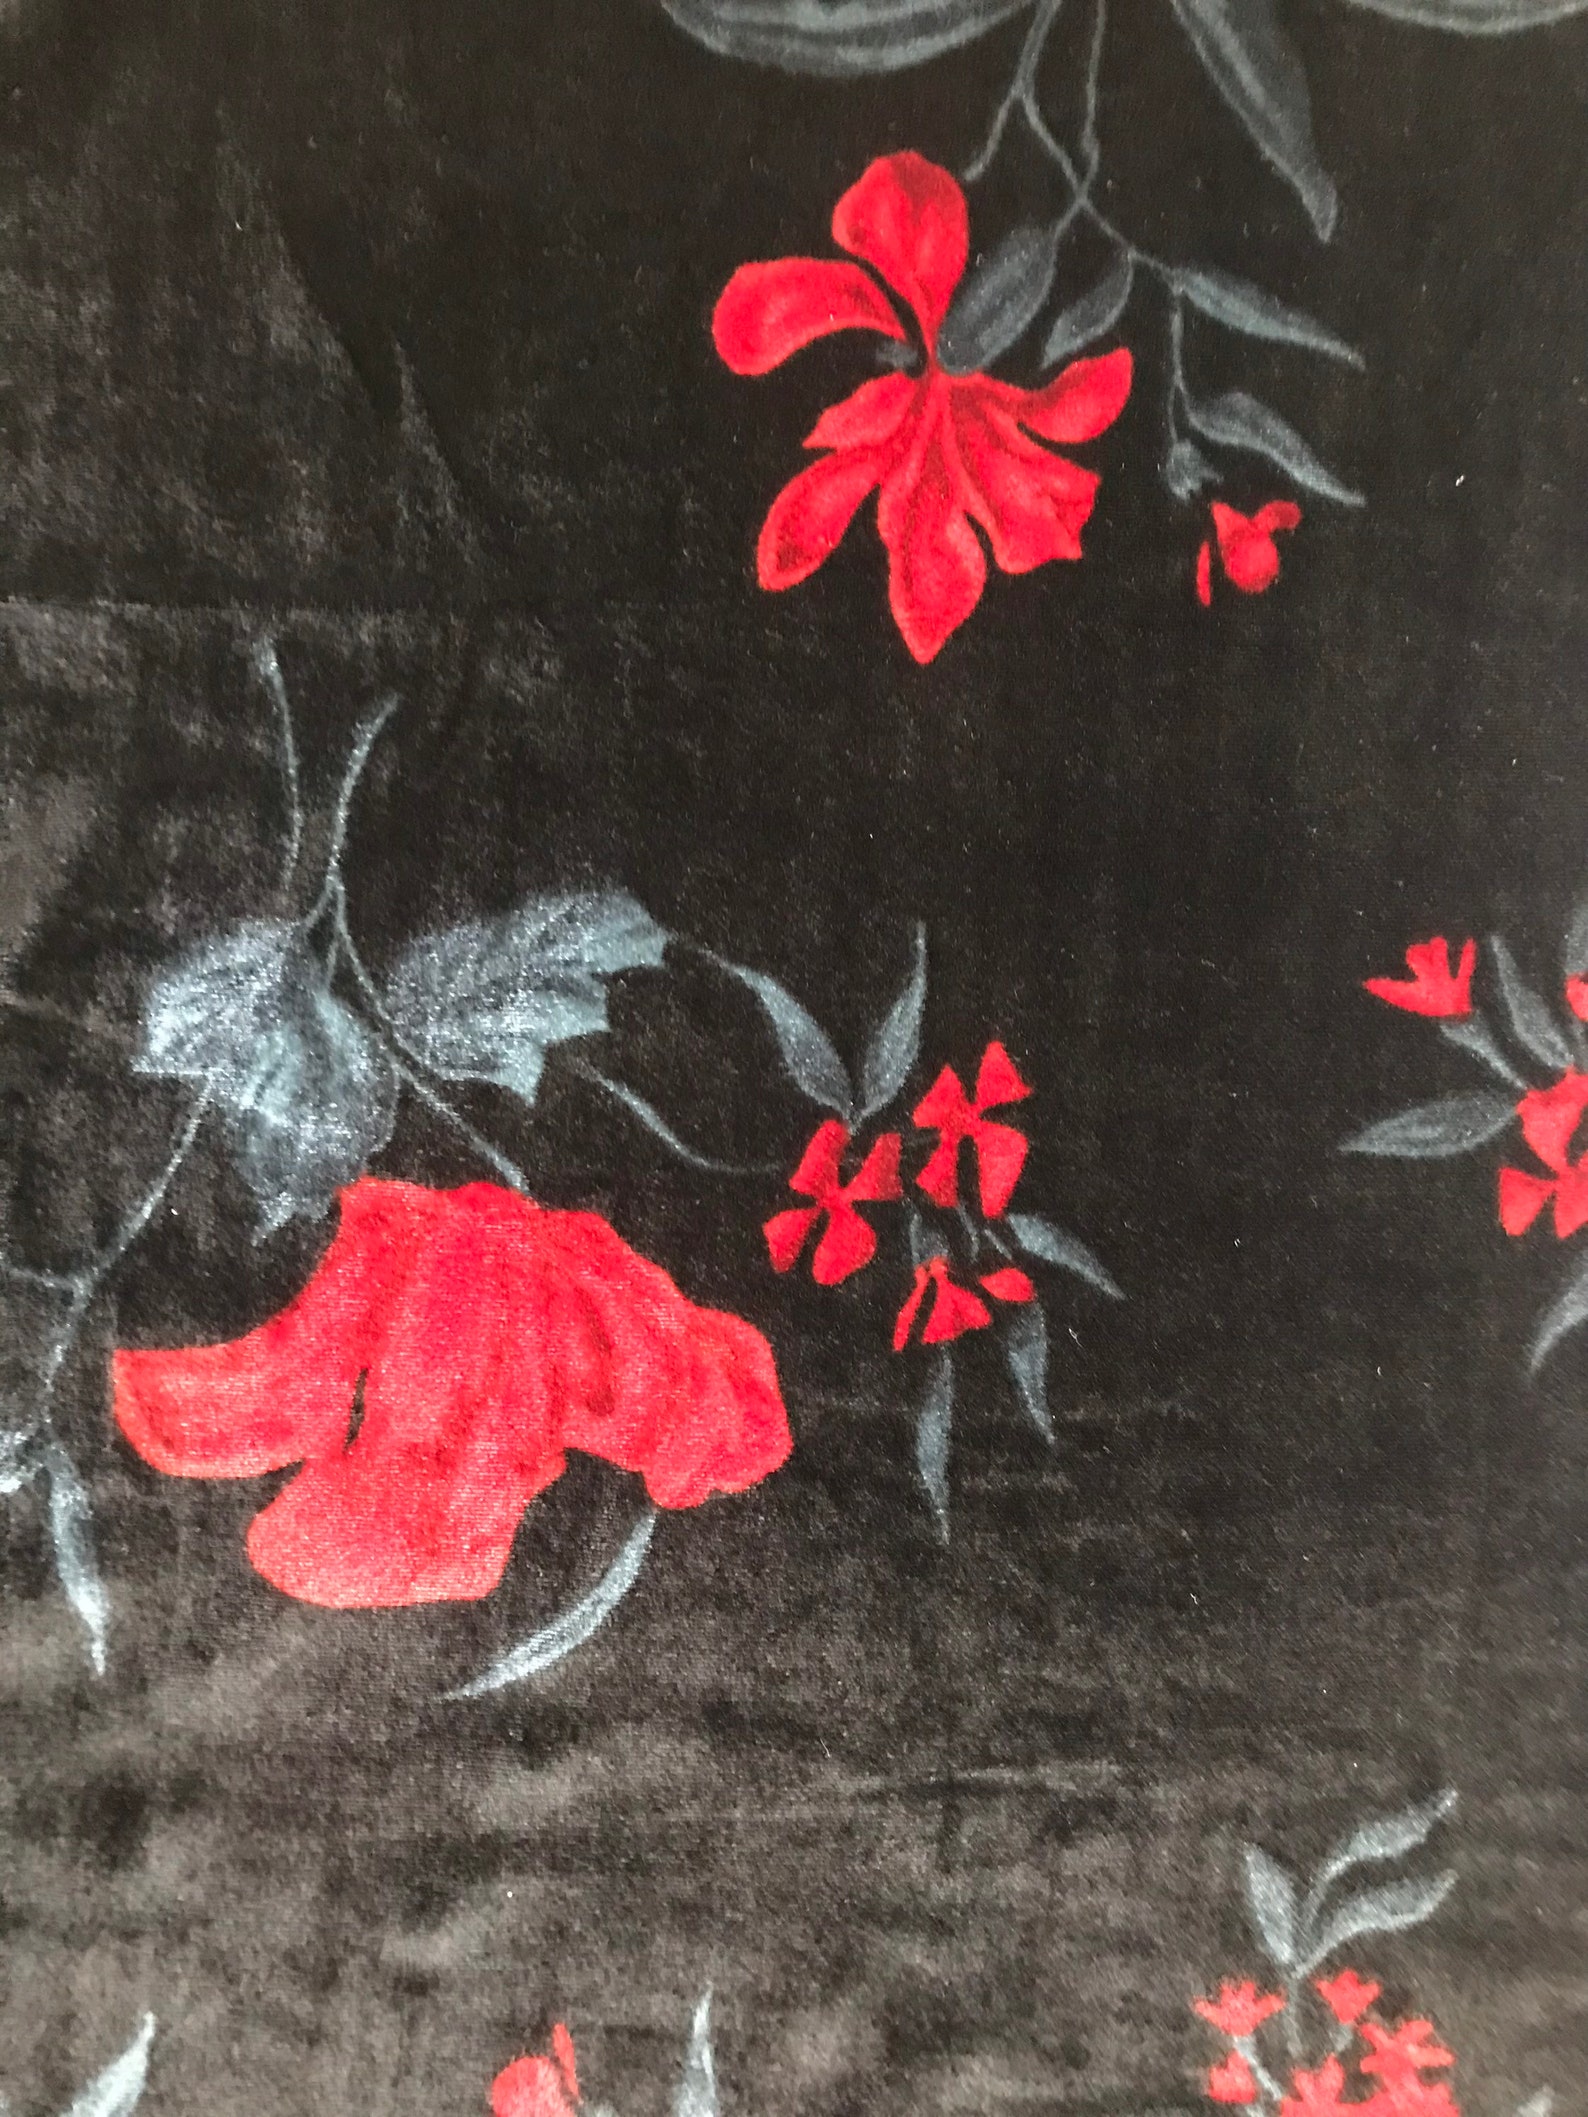 Black Velvet With Red Flower Patterns - Etsy